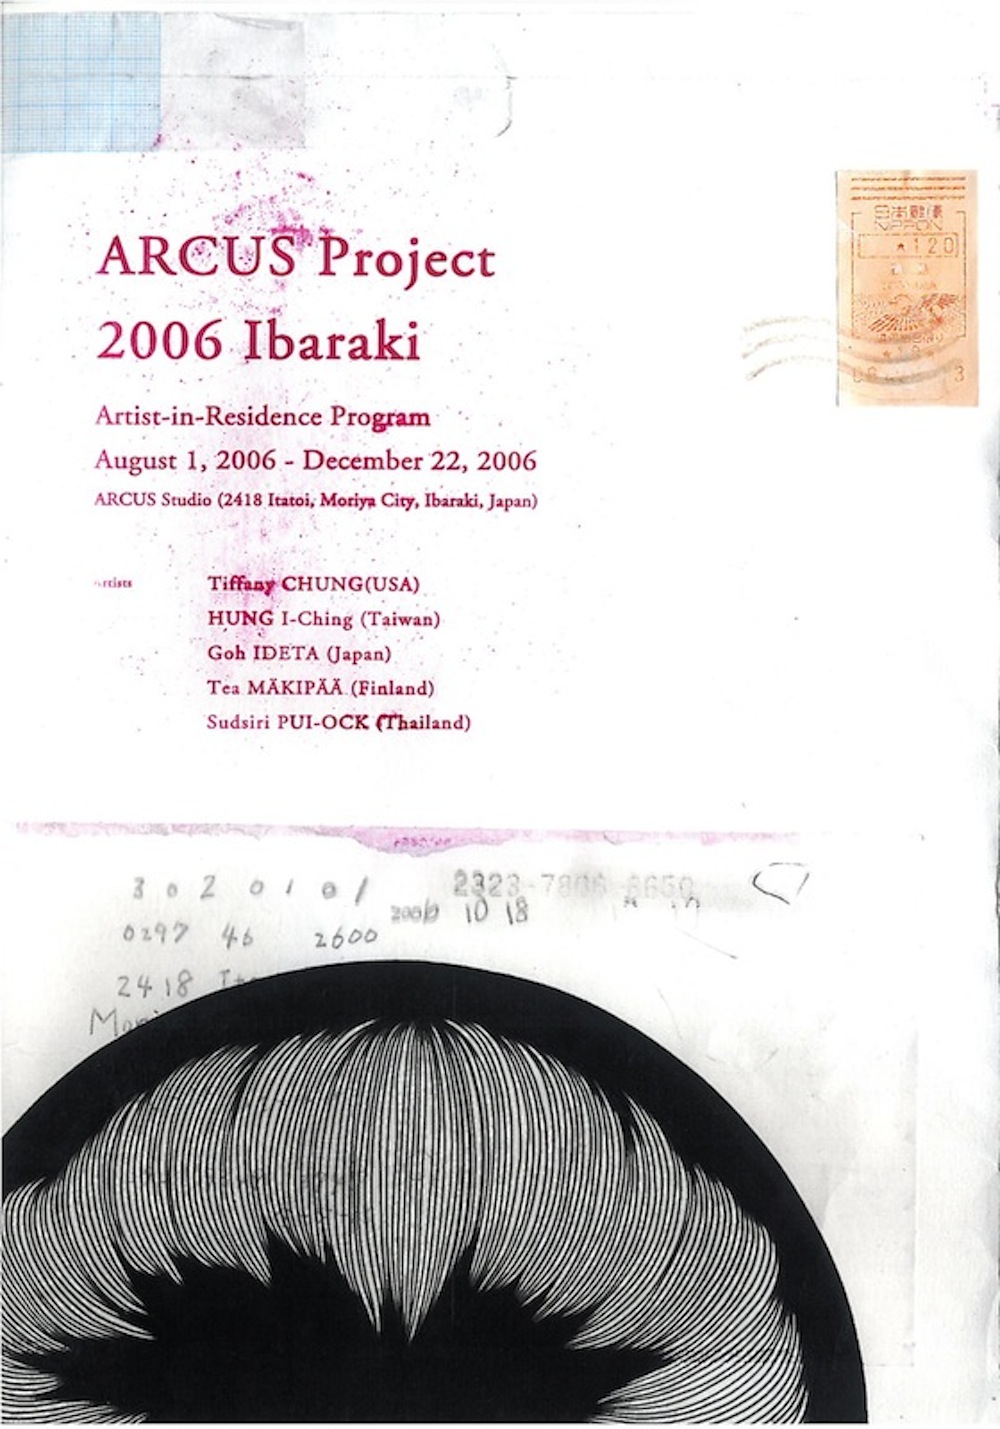 ARCUSチラシ 2006 アーカスプロジェクト